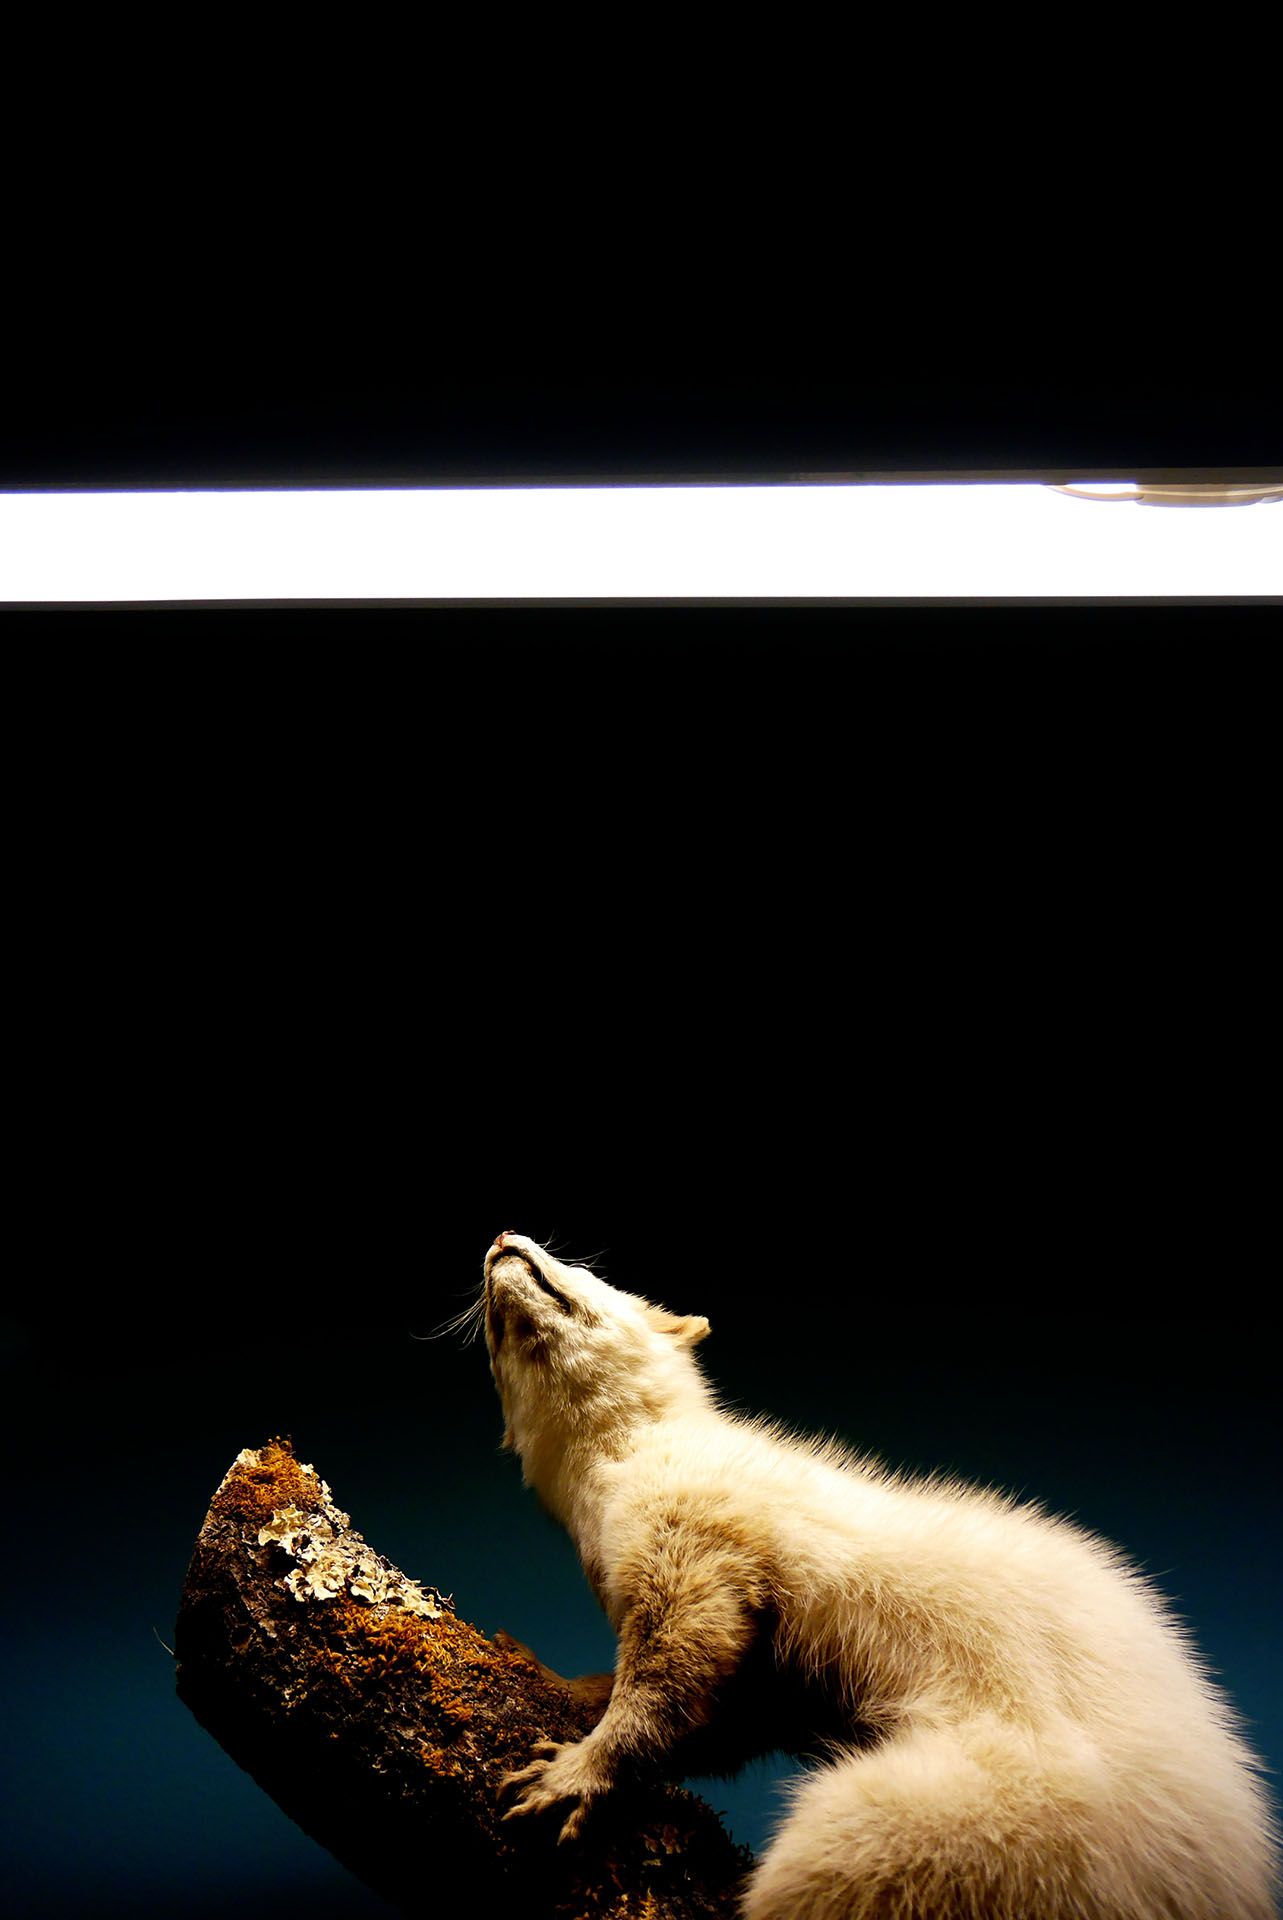 Animaux empaillés au muséum d'histoire naturelle de Genève en Suisse Stuffed animals at the Geneva Natural History Museum in Switzerland